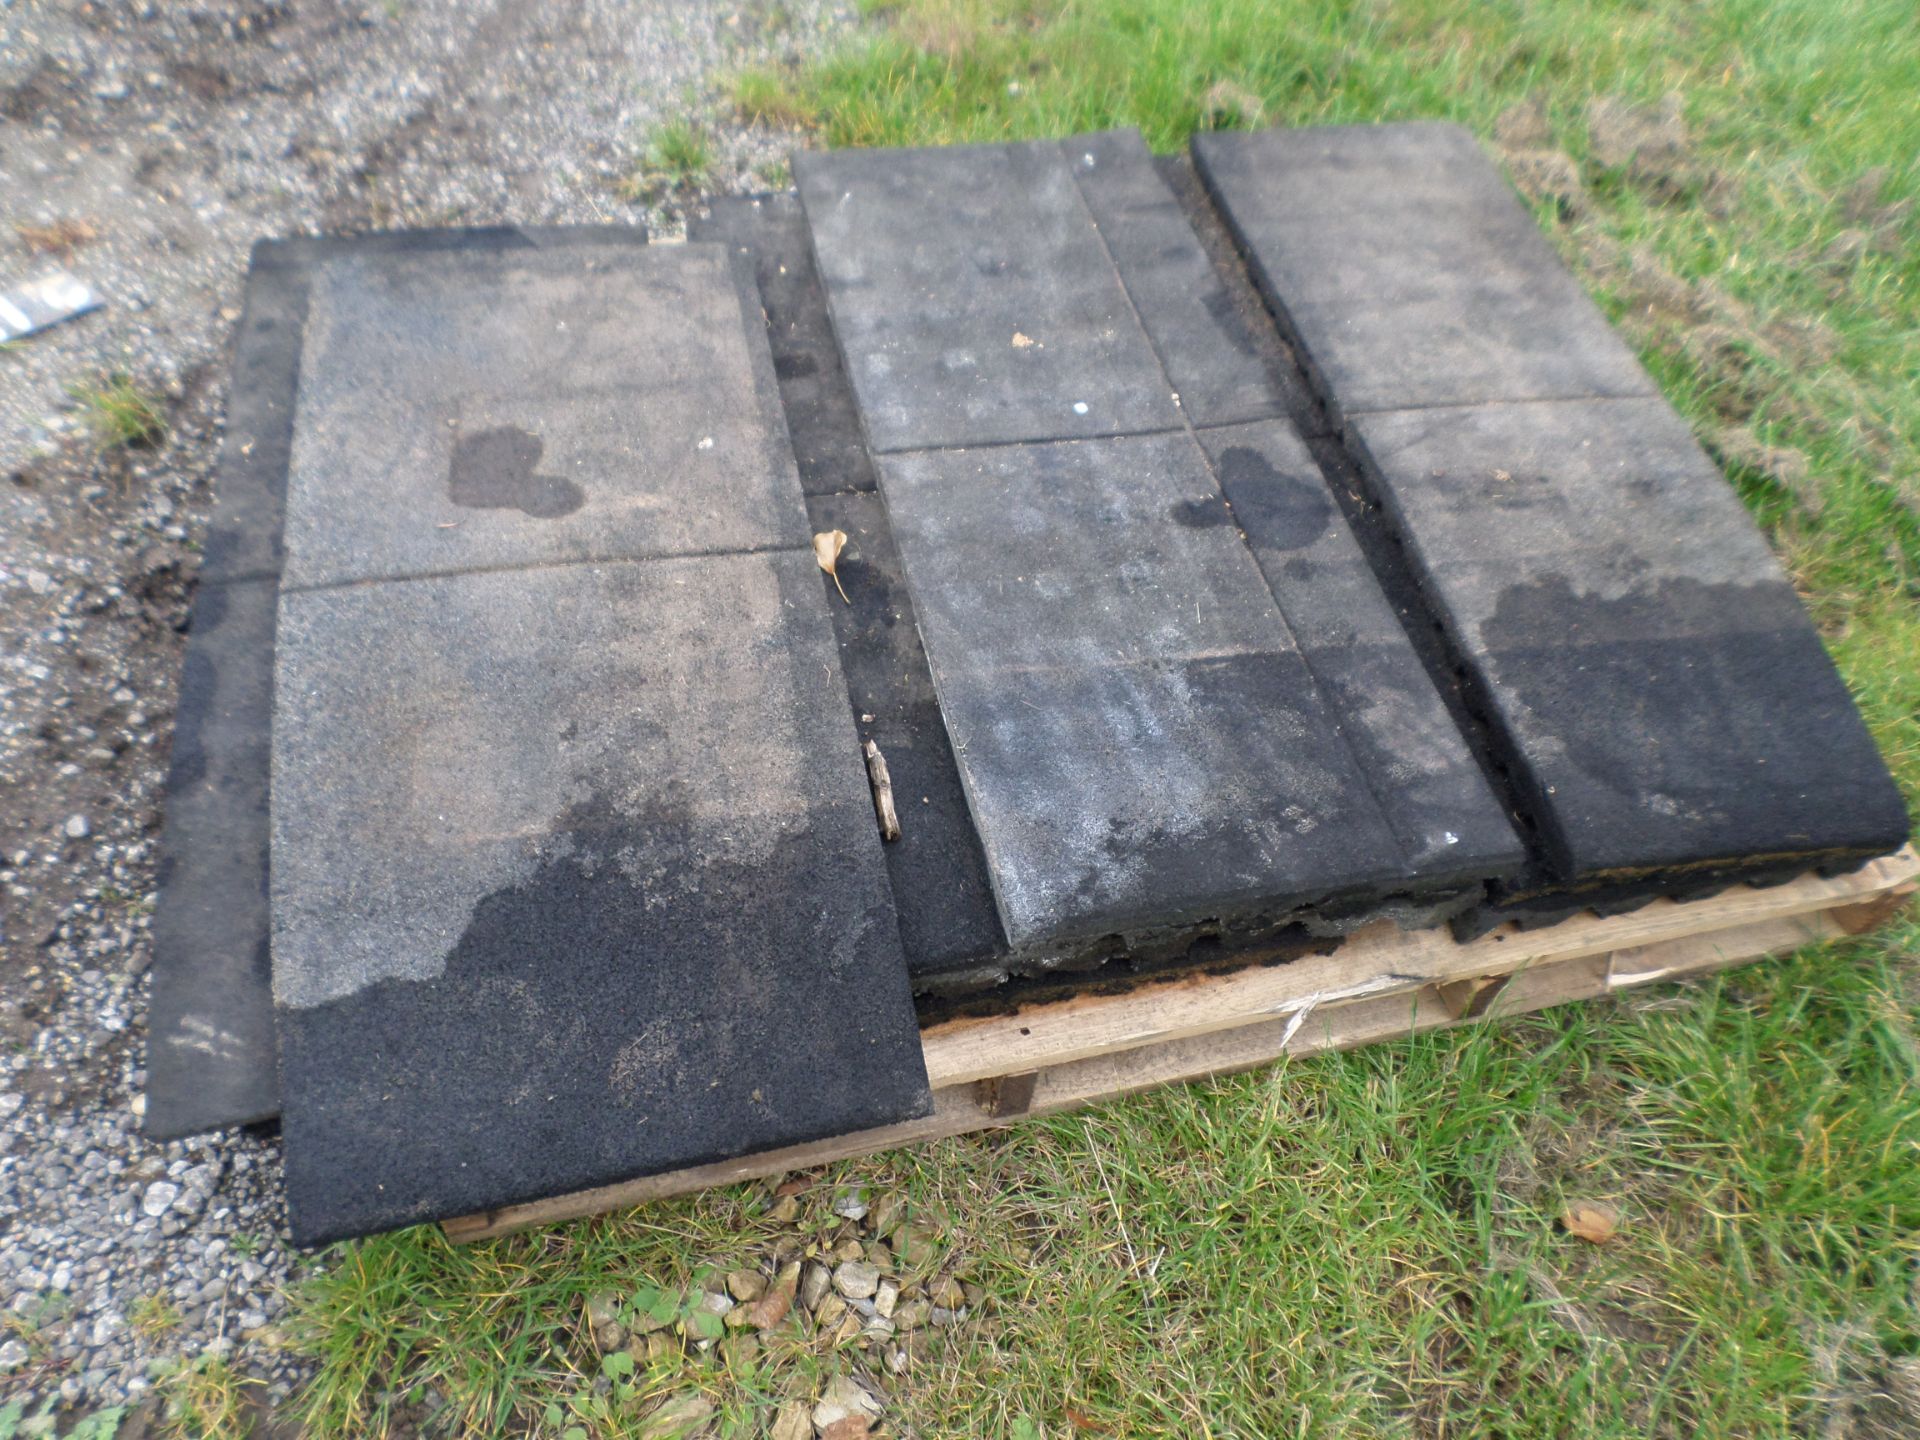 Pallet of heavy duty floor mats - Image 2 of 2